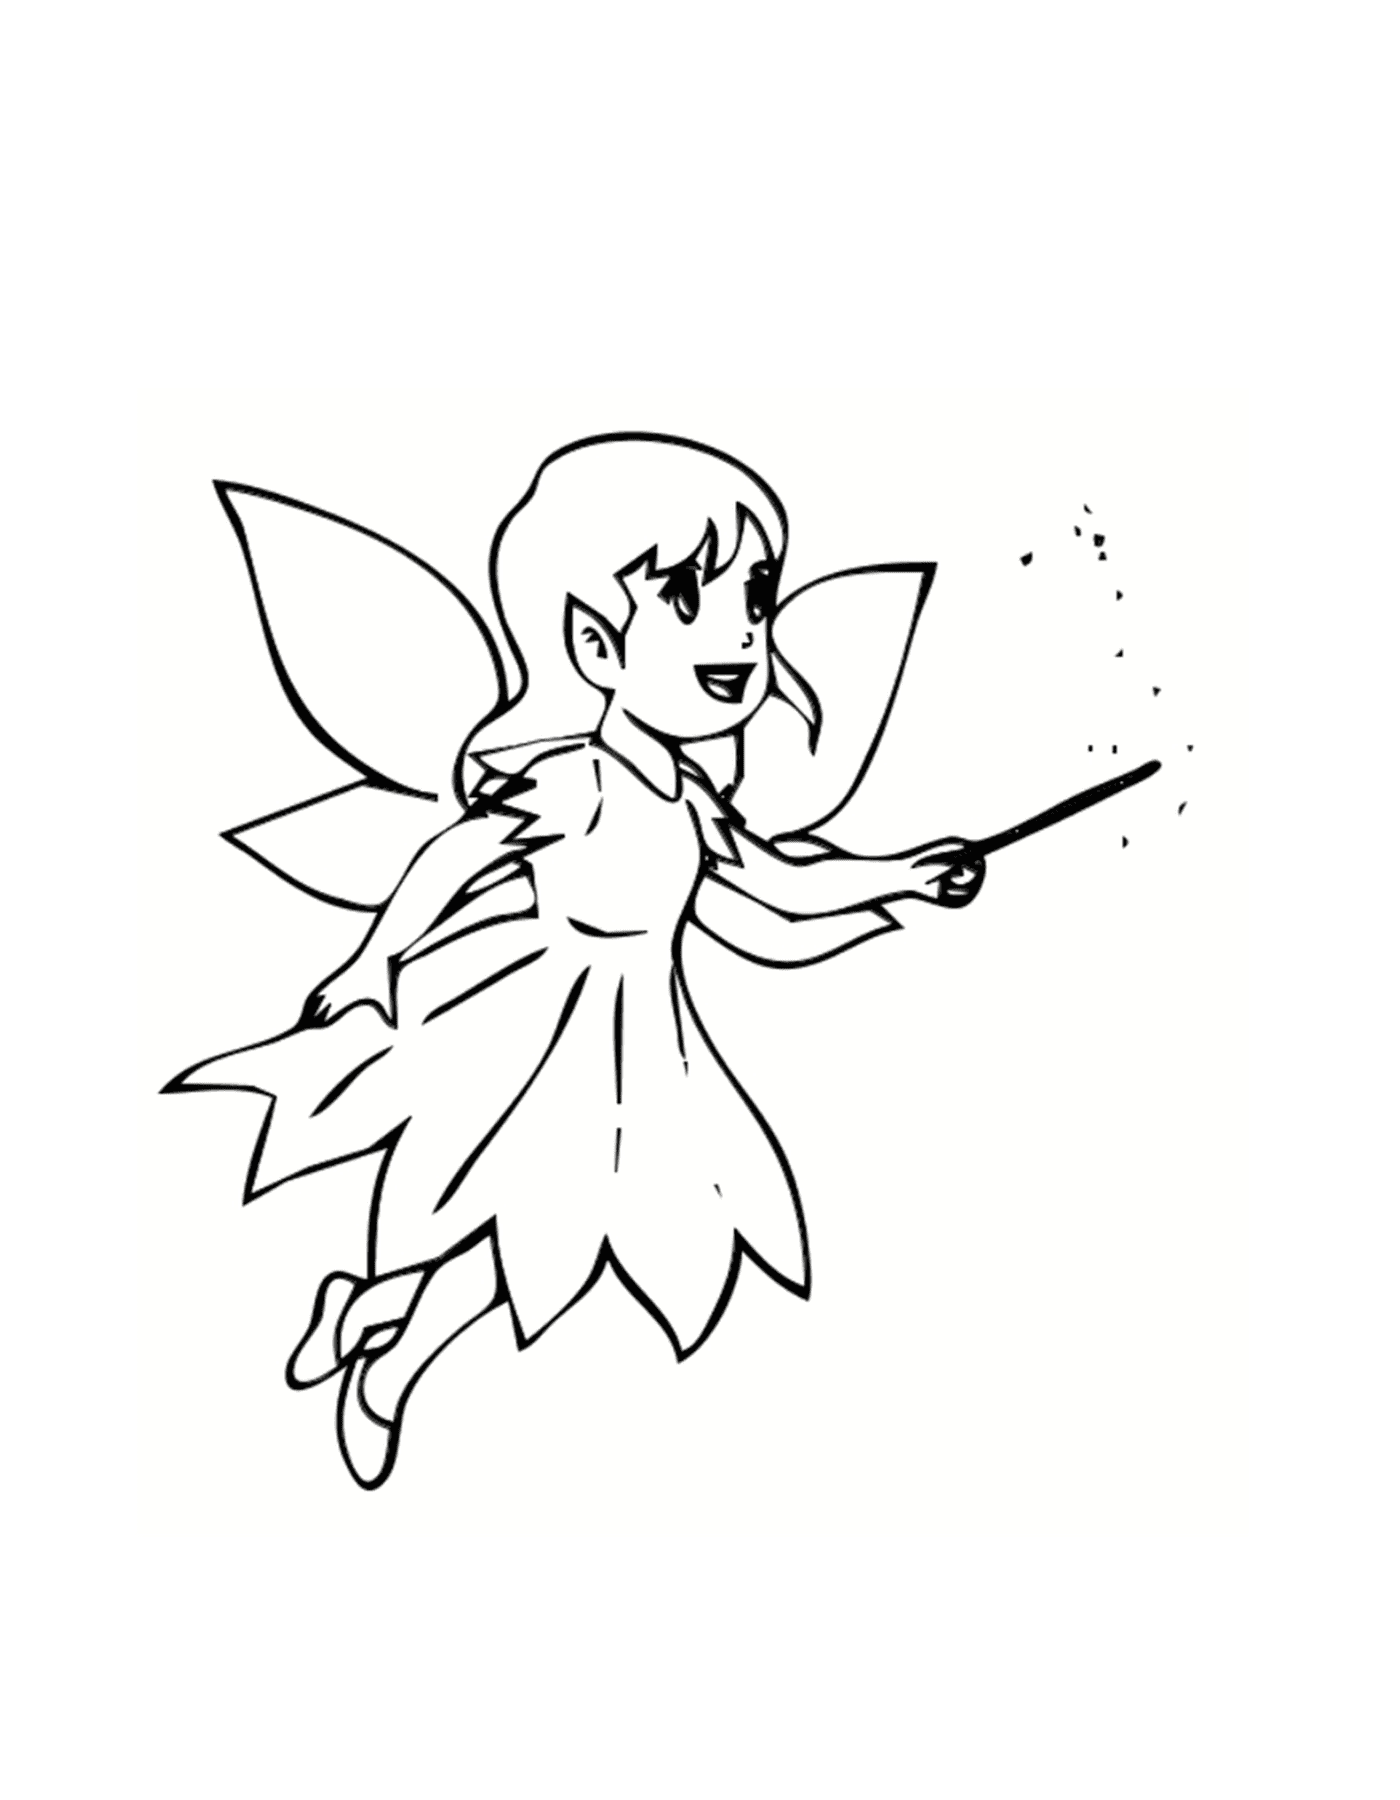  一个有魔杖的飞行仙女 